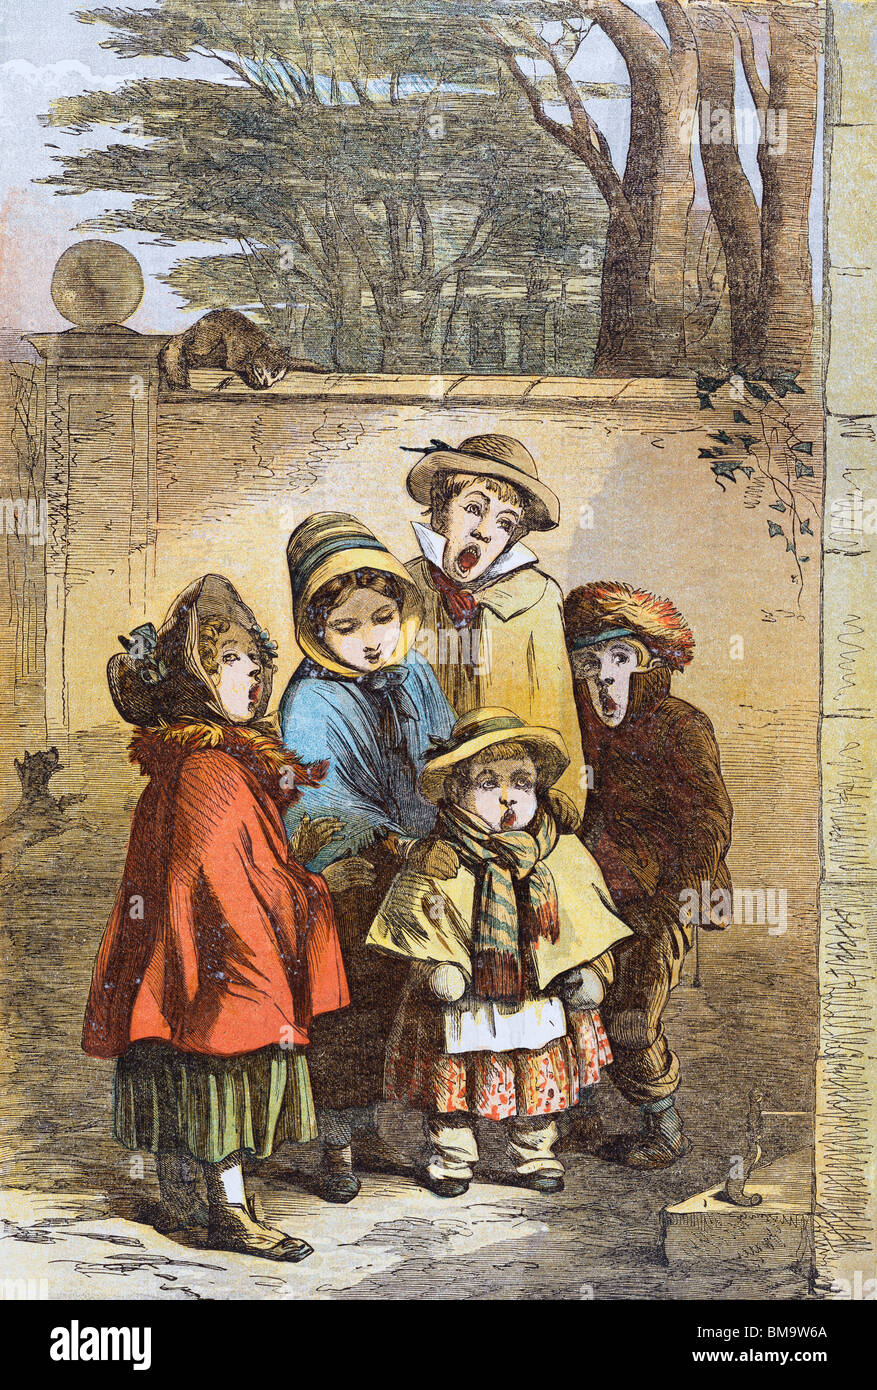 Un Chant de Noël, de l'Illustrated London News, illustré par Phiz. Londres, Angleterre, 1855 Banque D'Images